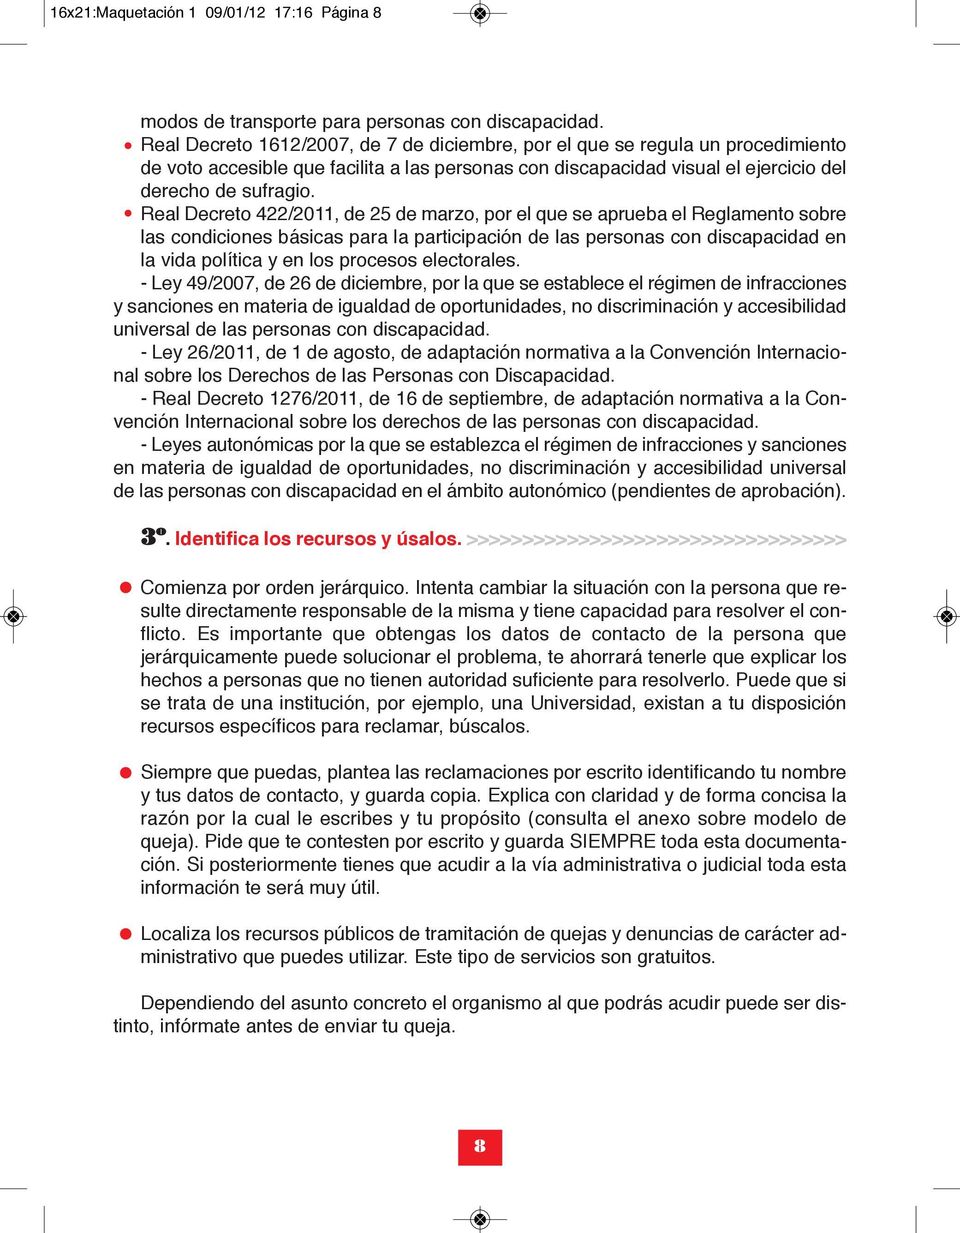 Real Decreto 422/2011, de 25 de marzo, por el que se aprueba el Reglamento sobre las condiciones básicas para la participación de las personas con discapacidad en la vida política y en los procesos